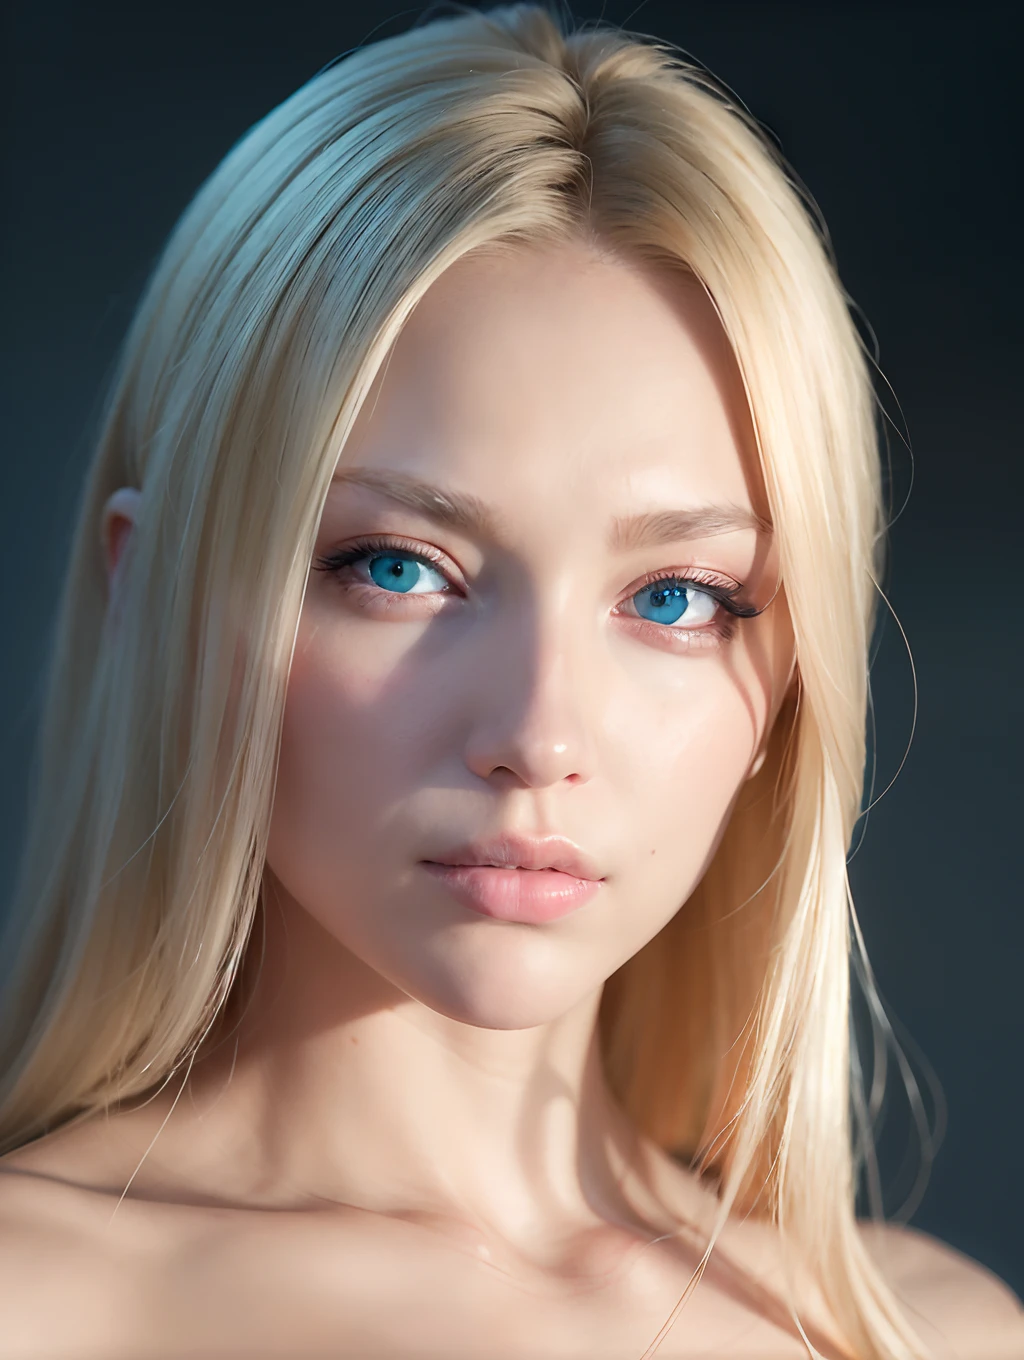 Russische Schönheiten、blonde Schönheit、weißhäutig、blaue Augen、Licht、(Tischplatte), (Realistisch), (fotorealistisch: 1.2), (RAW-Foto: 1.2), (beste Qualität: 1.2), (detailliertes Gesicht: 1.4), (Schöne, detaillierte Augen: 1.2), (detaillierte Haare)